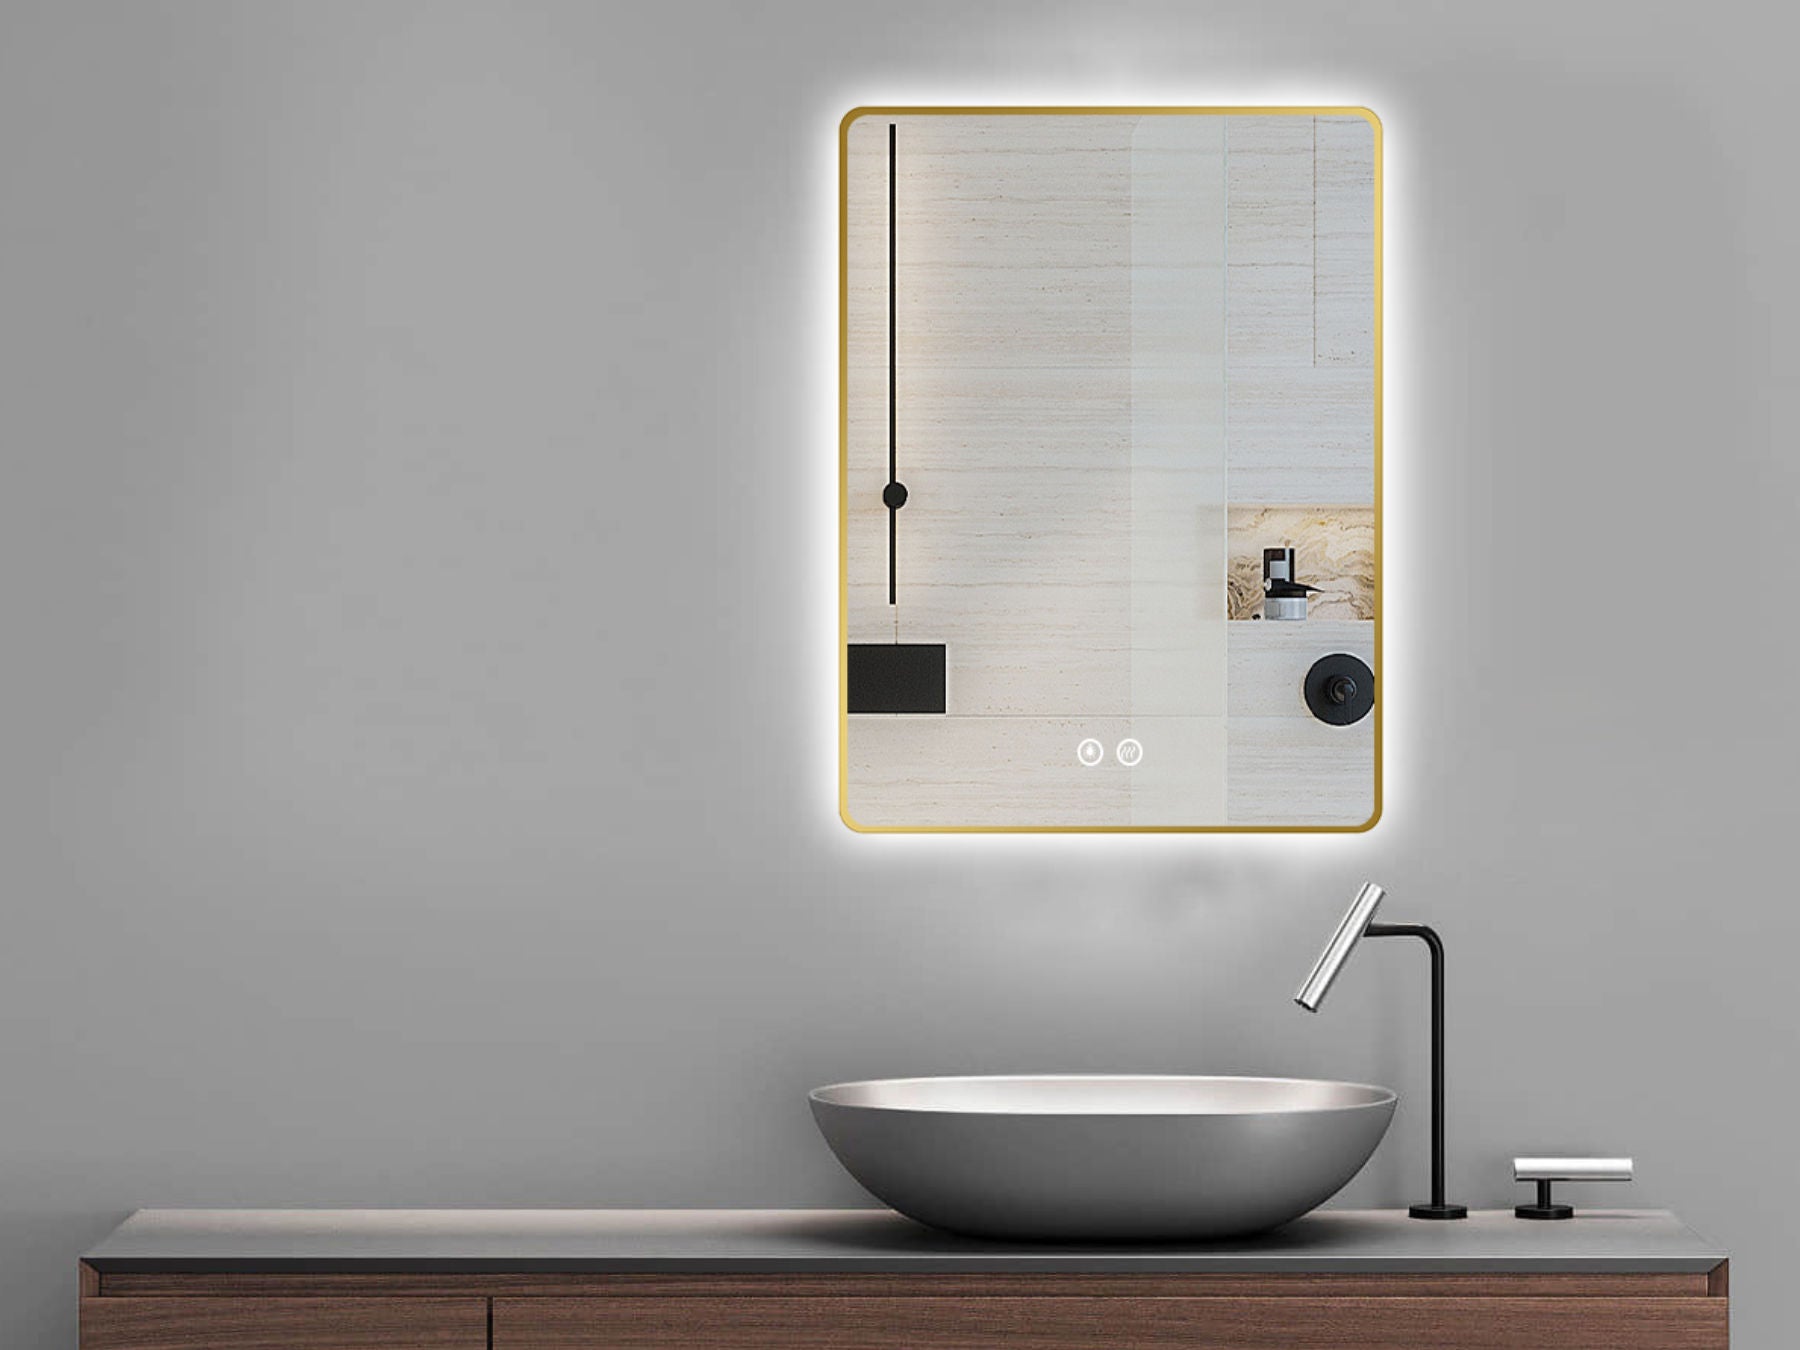 LED Badspiegel, design Badspiegel, Badspiegel mit led Beleuchtung